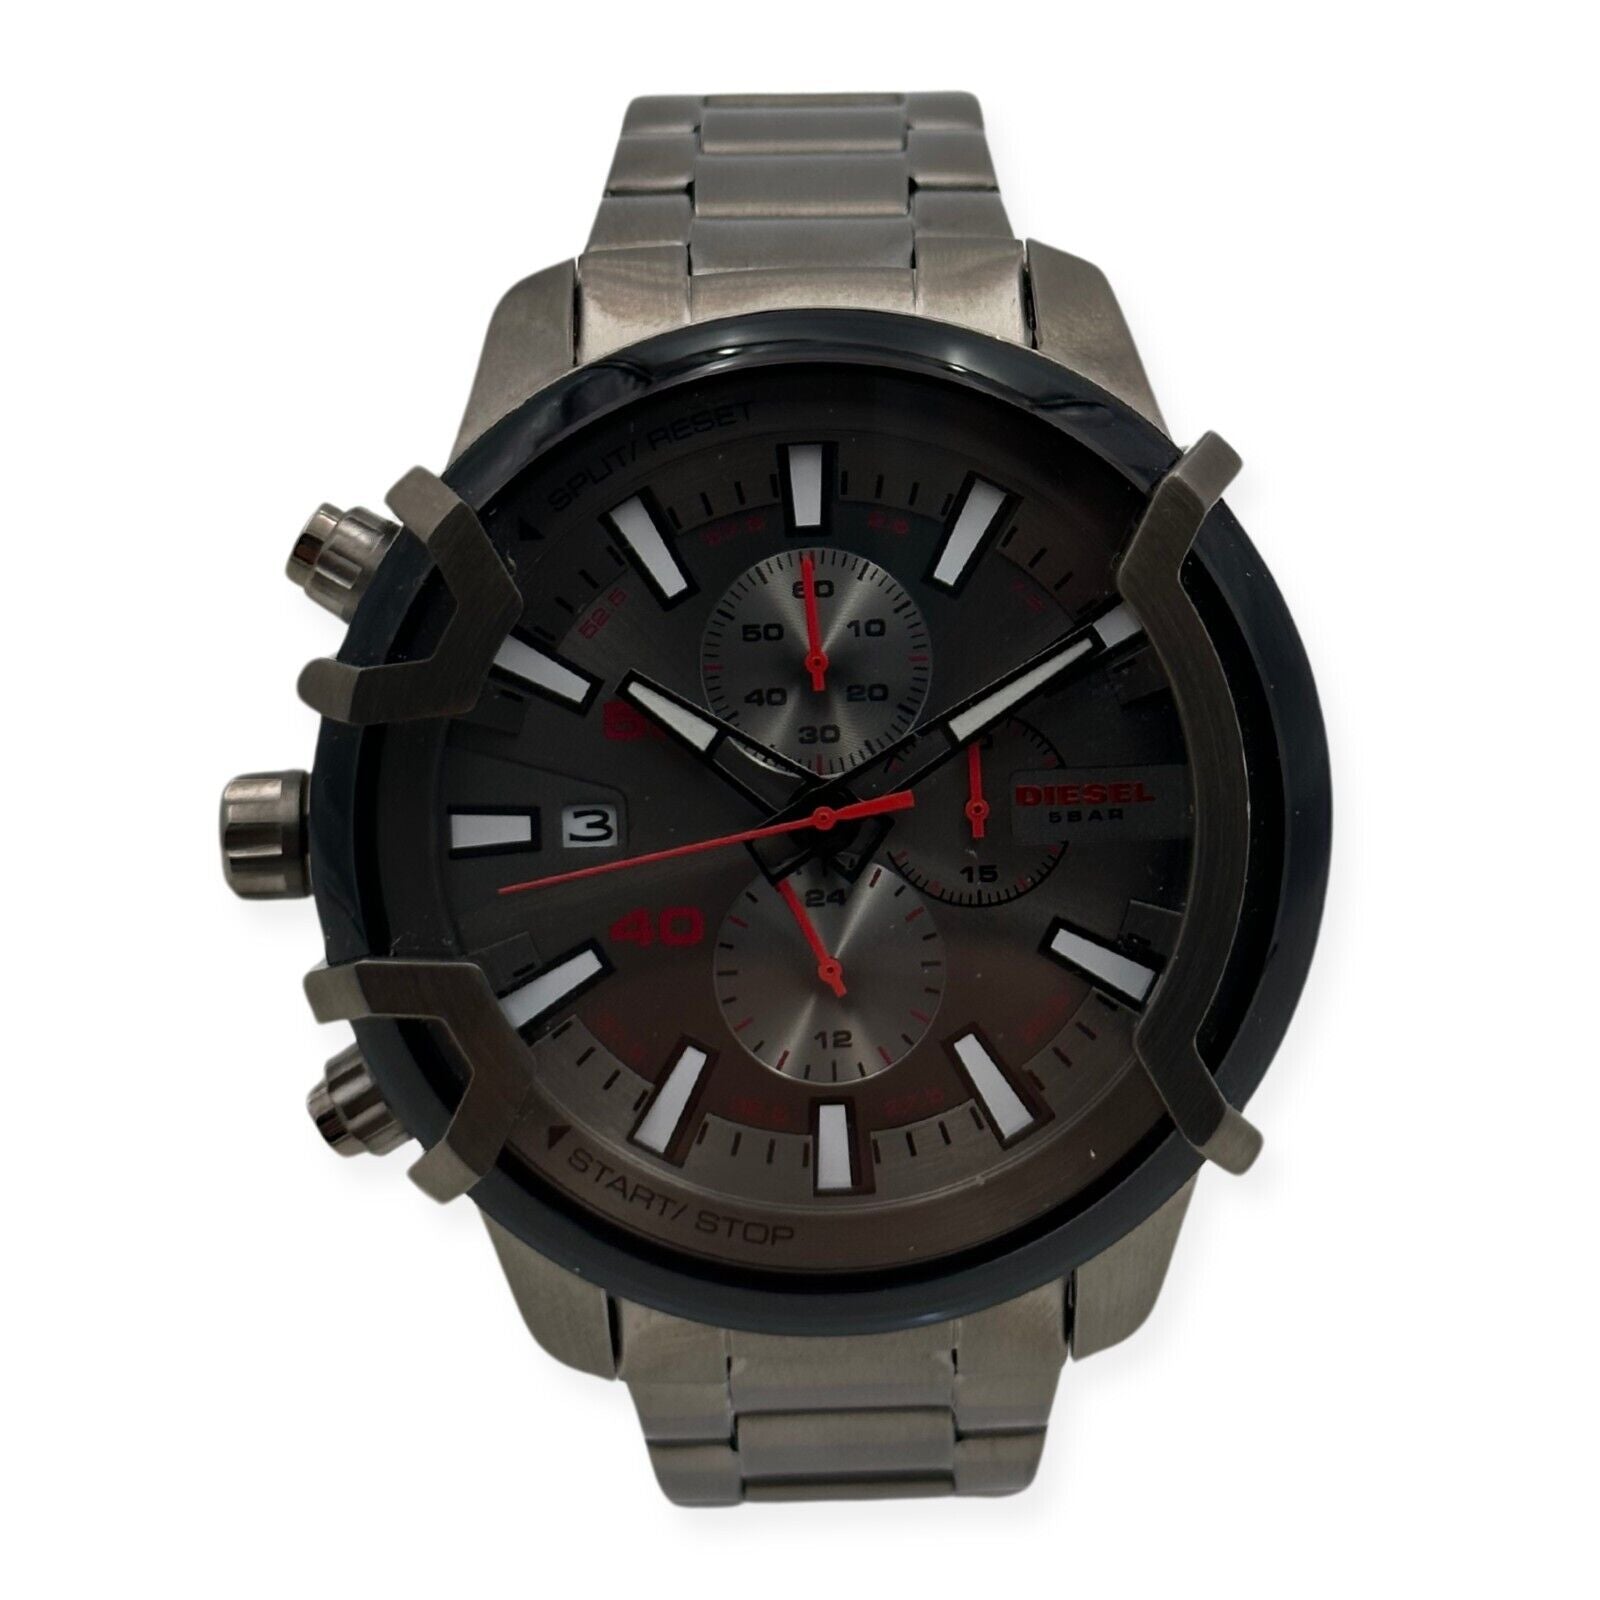 Diesel Men's Griffed Stainless Steel Chronograph Quartz Watch - DZ4586 - 698615143436